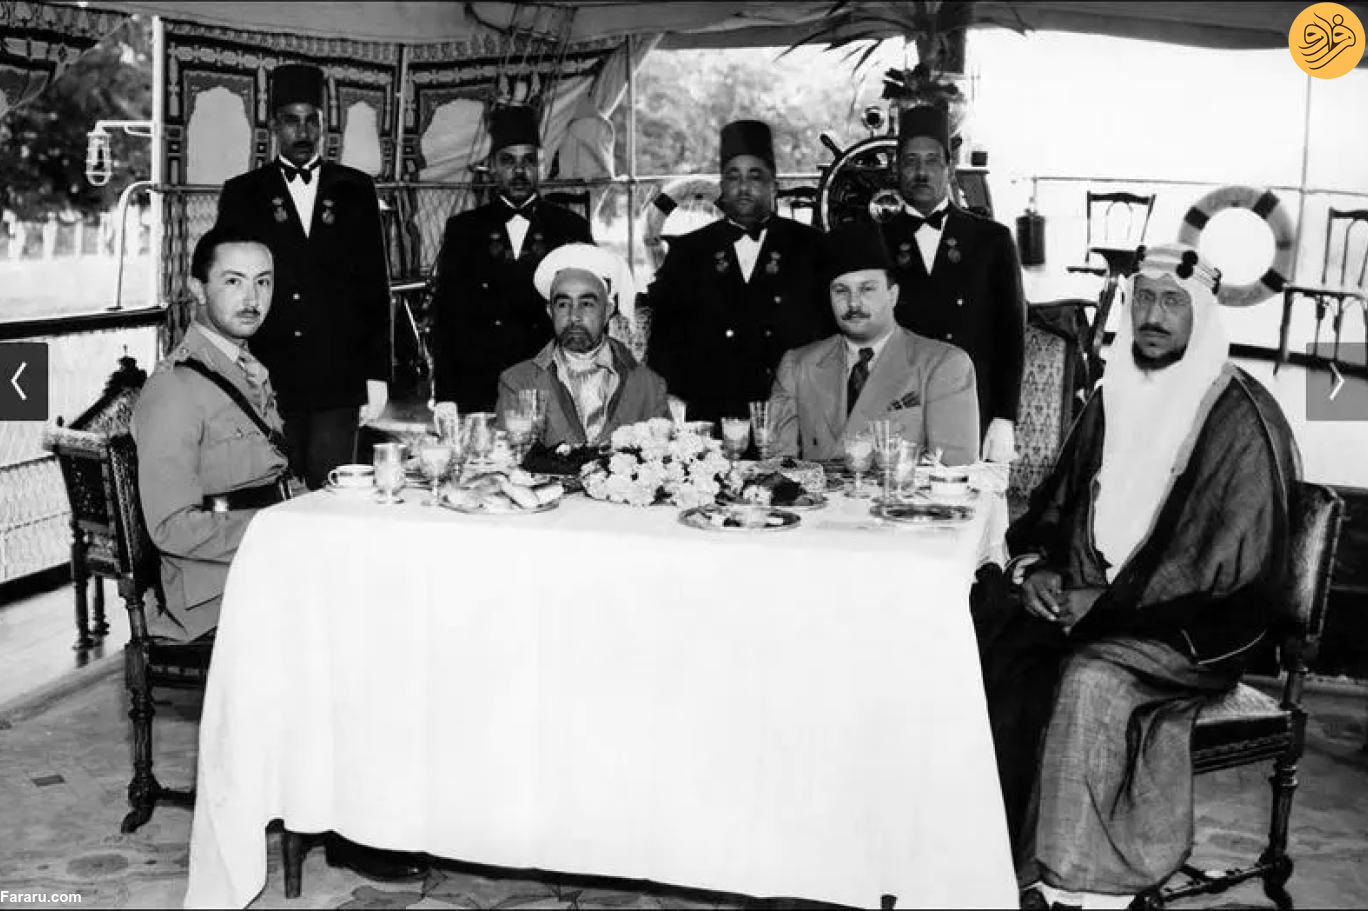 عکسی تاریخی از اولین اجلاس سران اتحادیه عرب